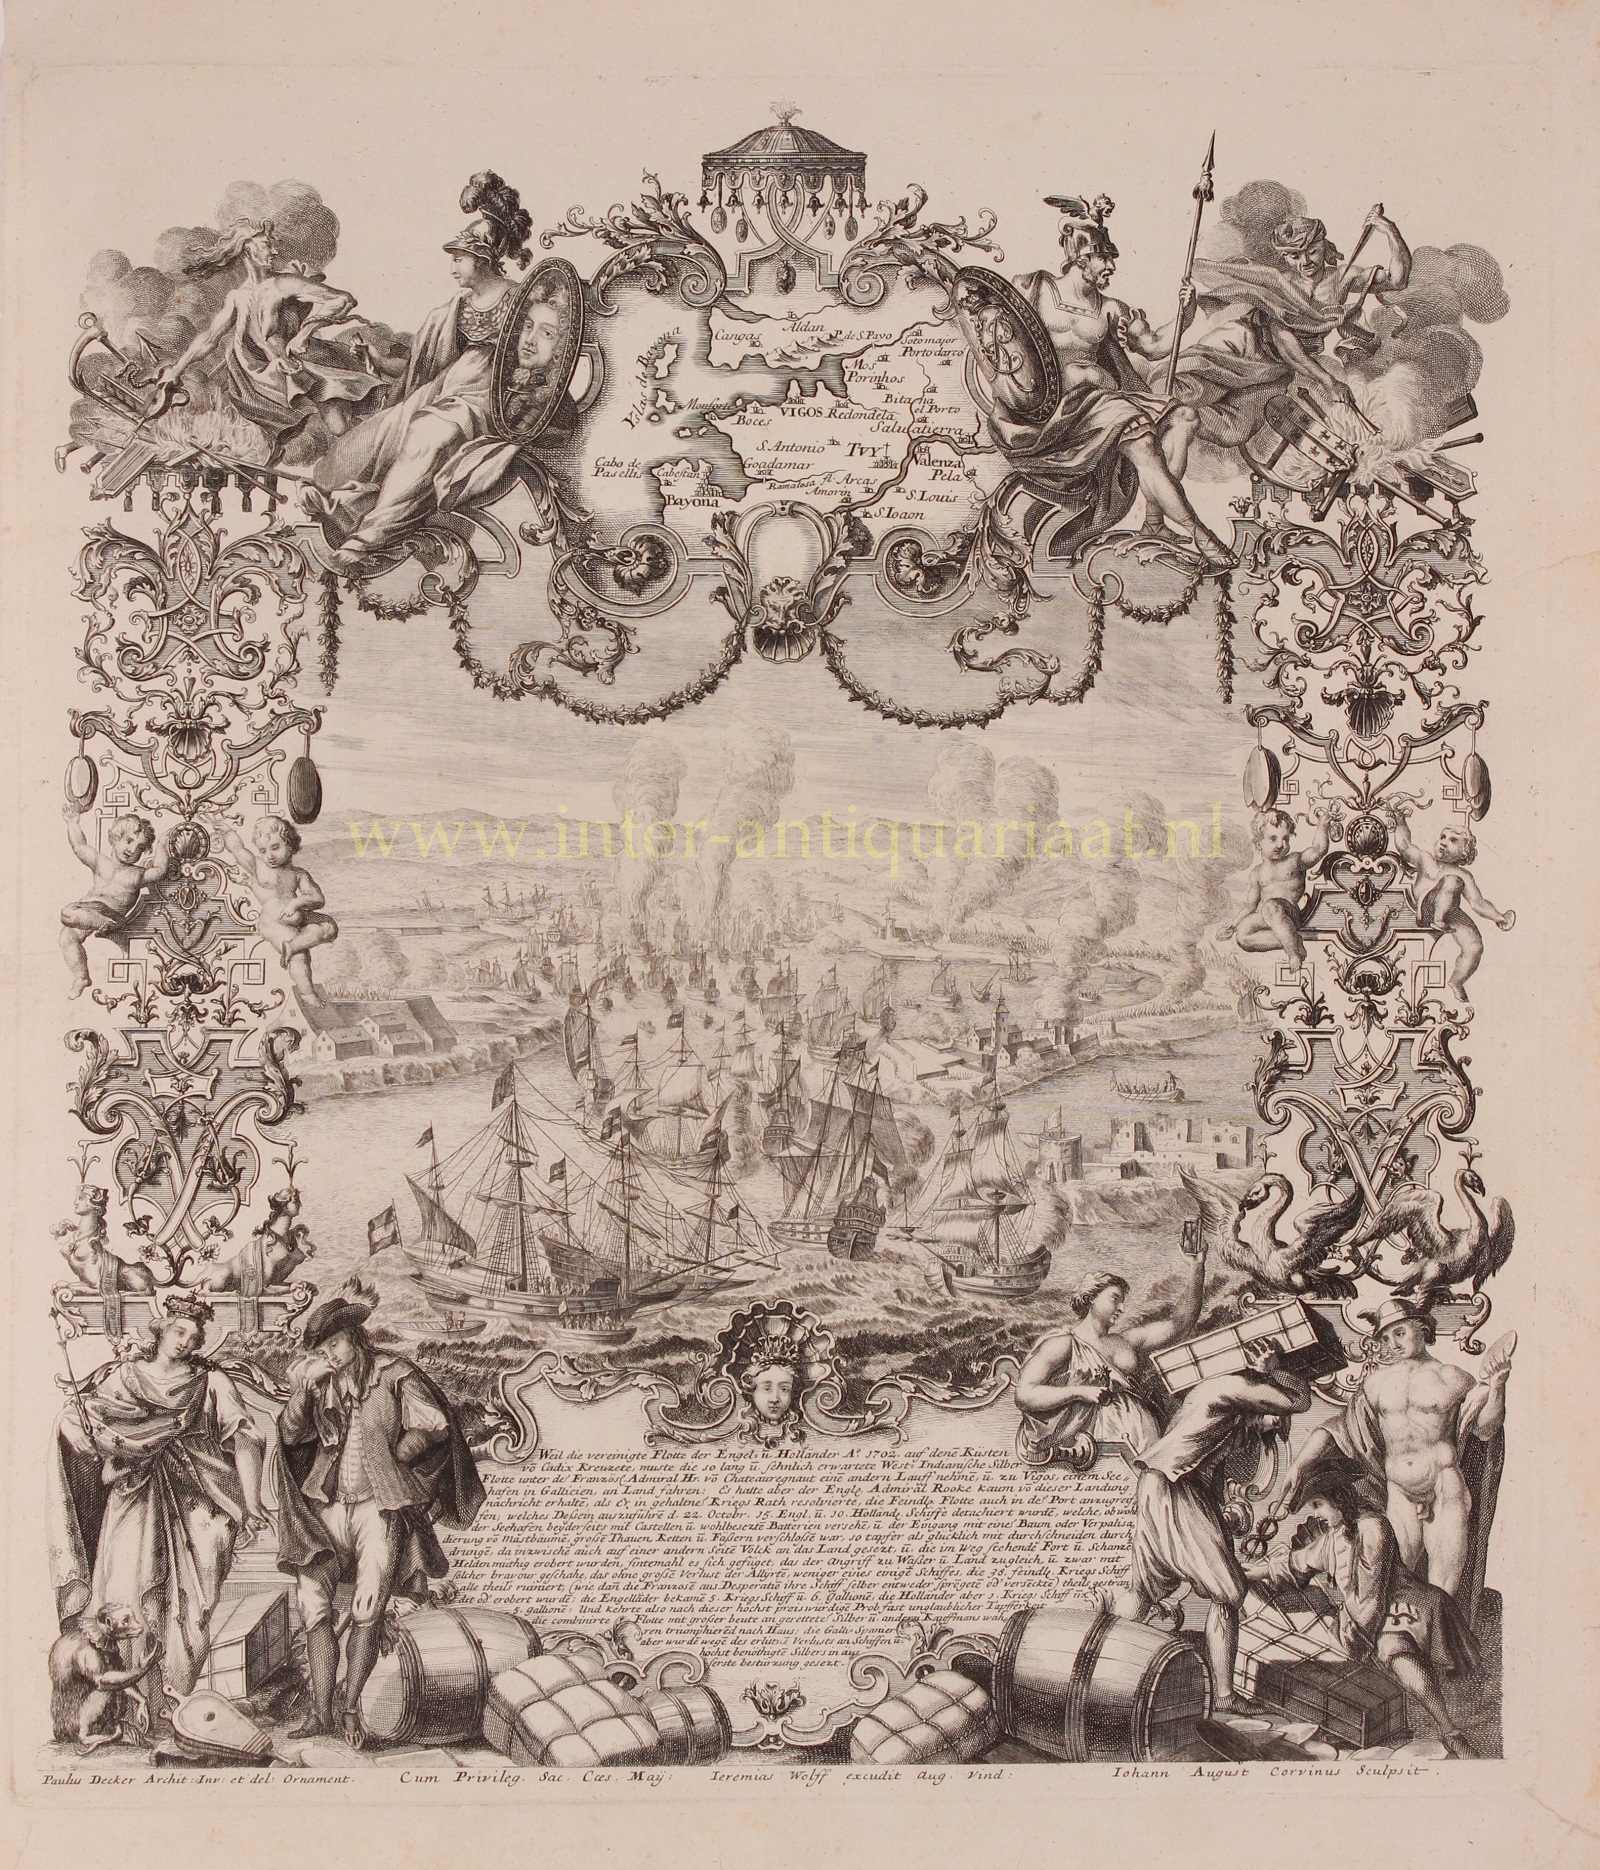  - Battle of Vigo Bay - Johann August Corvinus after Paul Decker, c. 1720